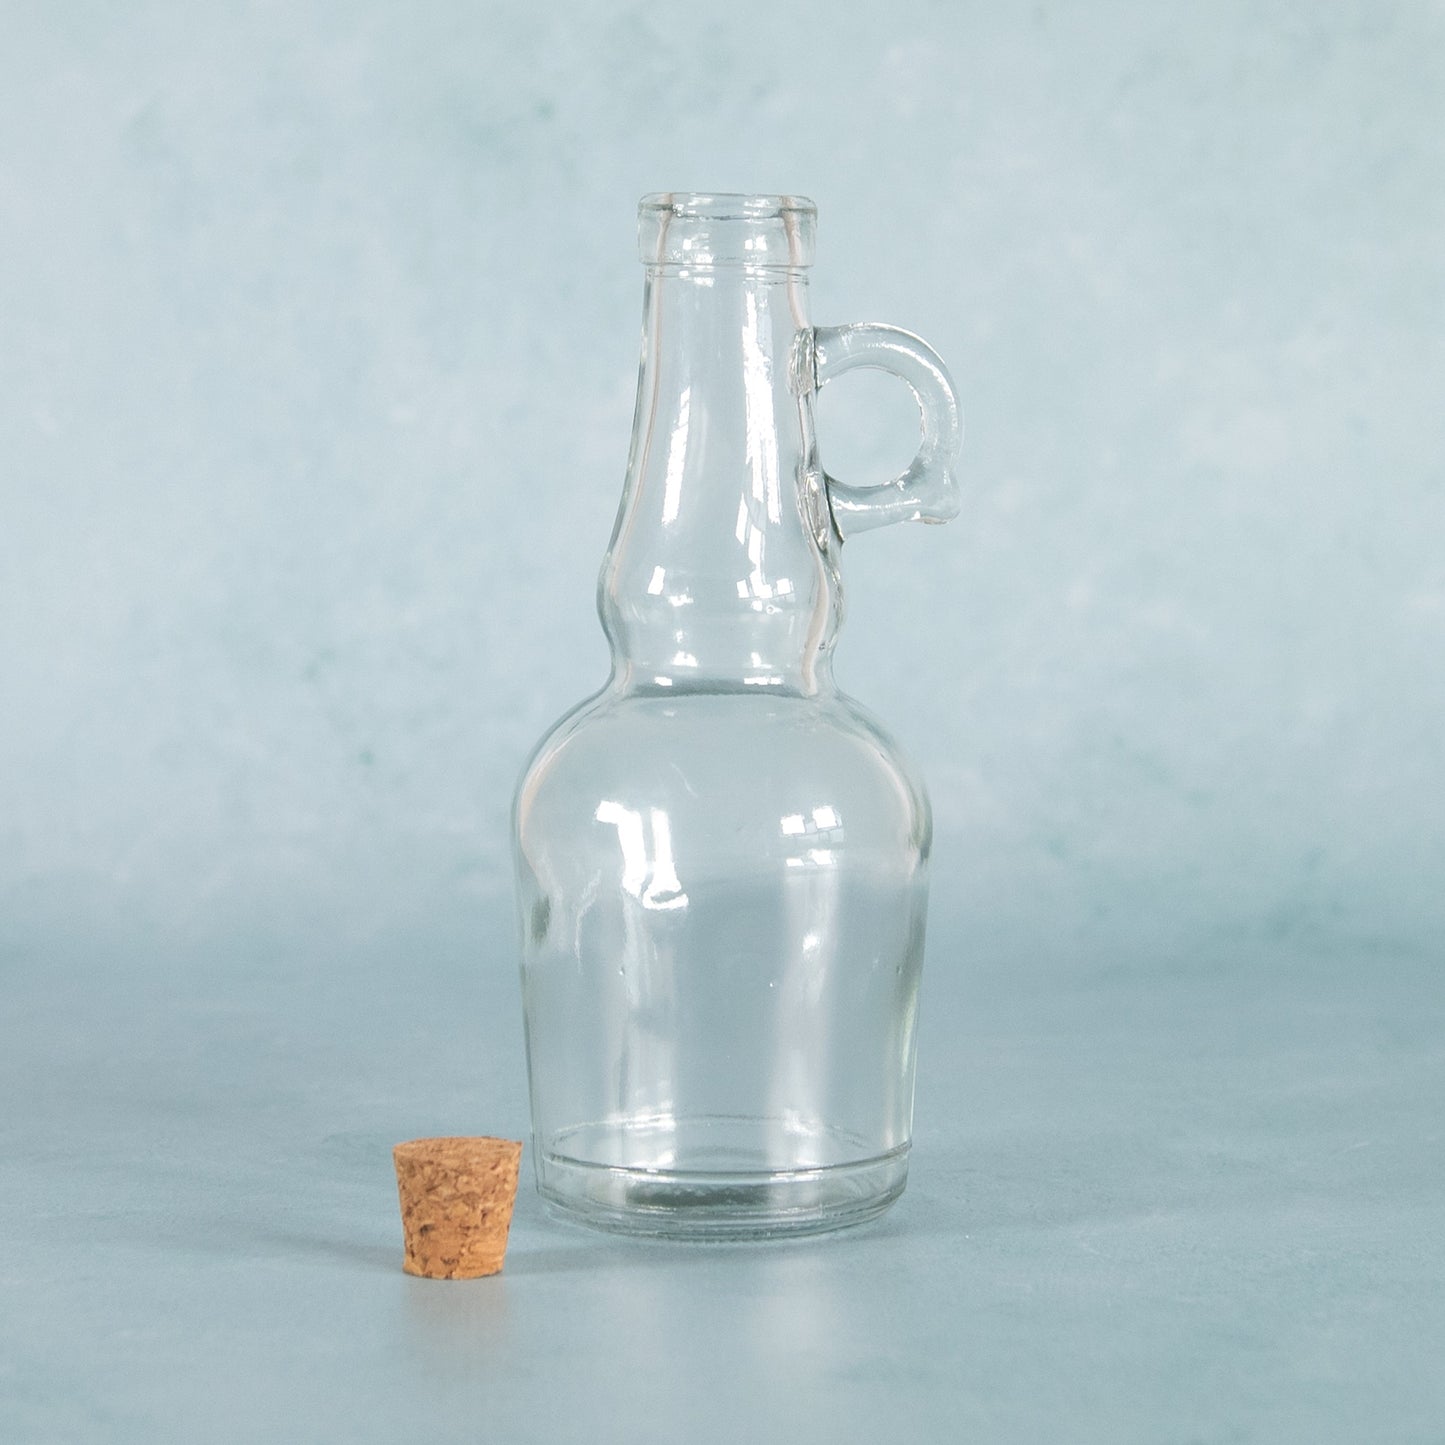 250ml Glass Oil & Vinegar Bottle Set with Cork Stoppers